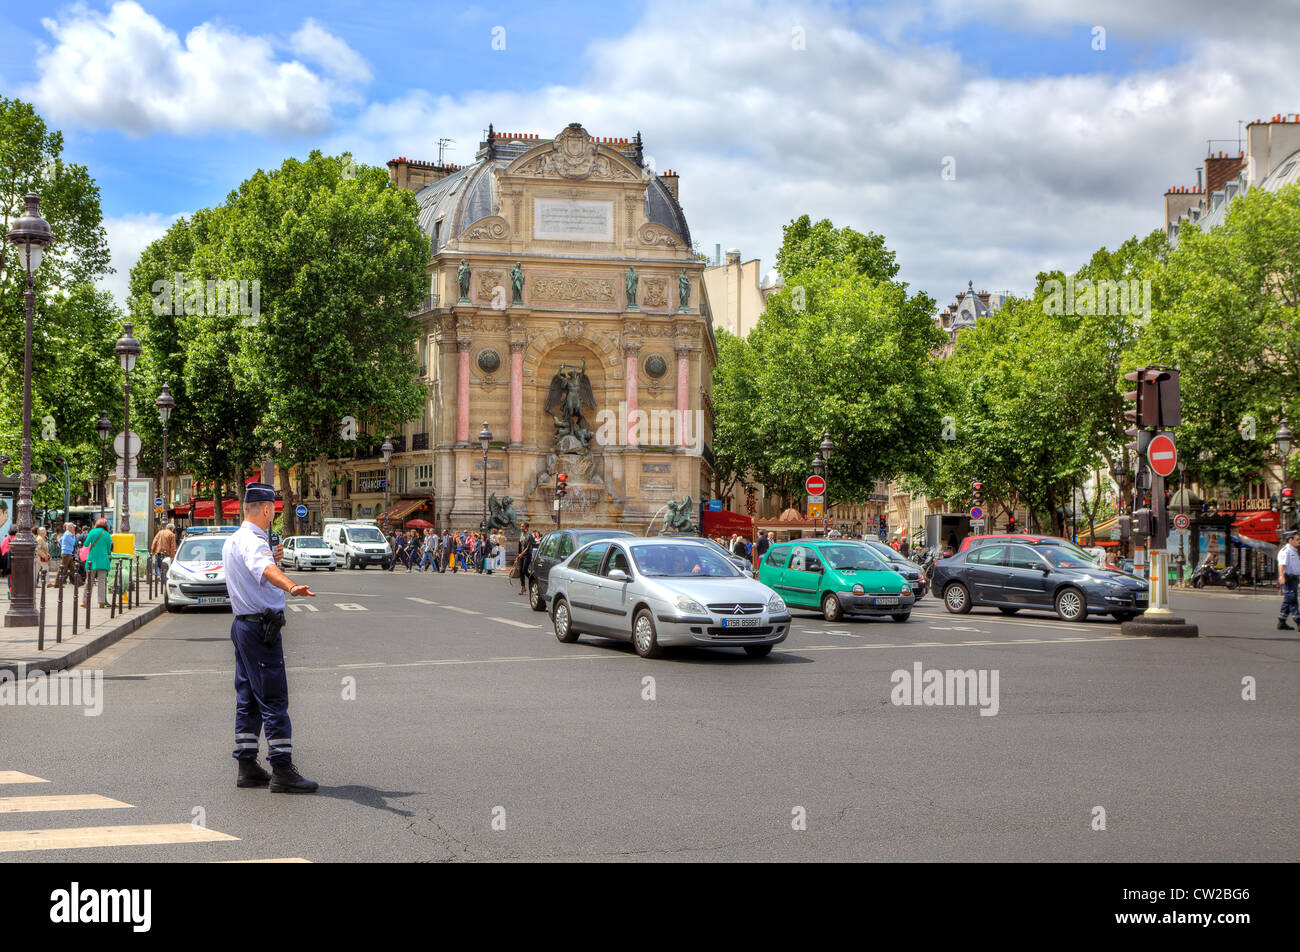 Réglemente le trafic au niveau policier Place Saint-Michel place publique en face d'une fontaine monumentale à Paris, France. Banque D'Images